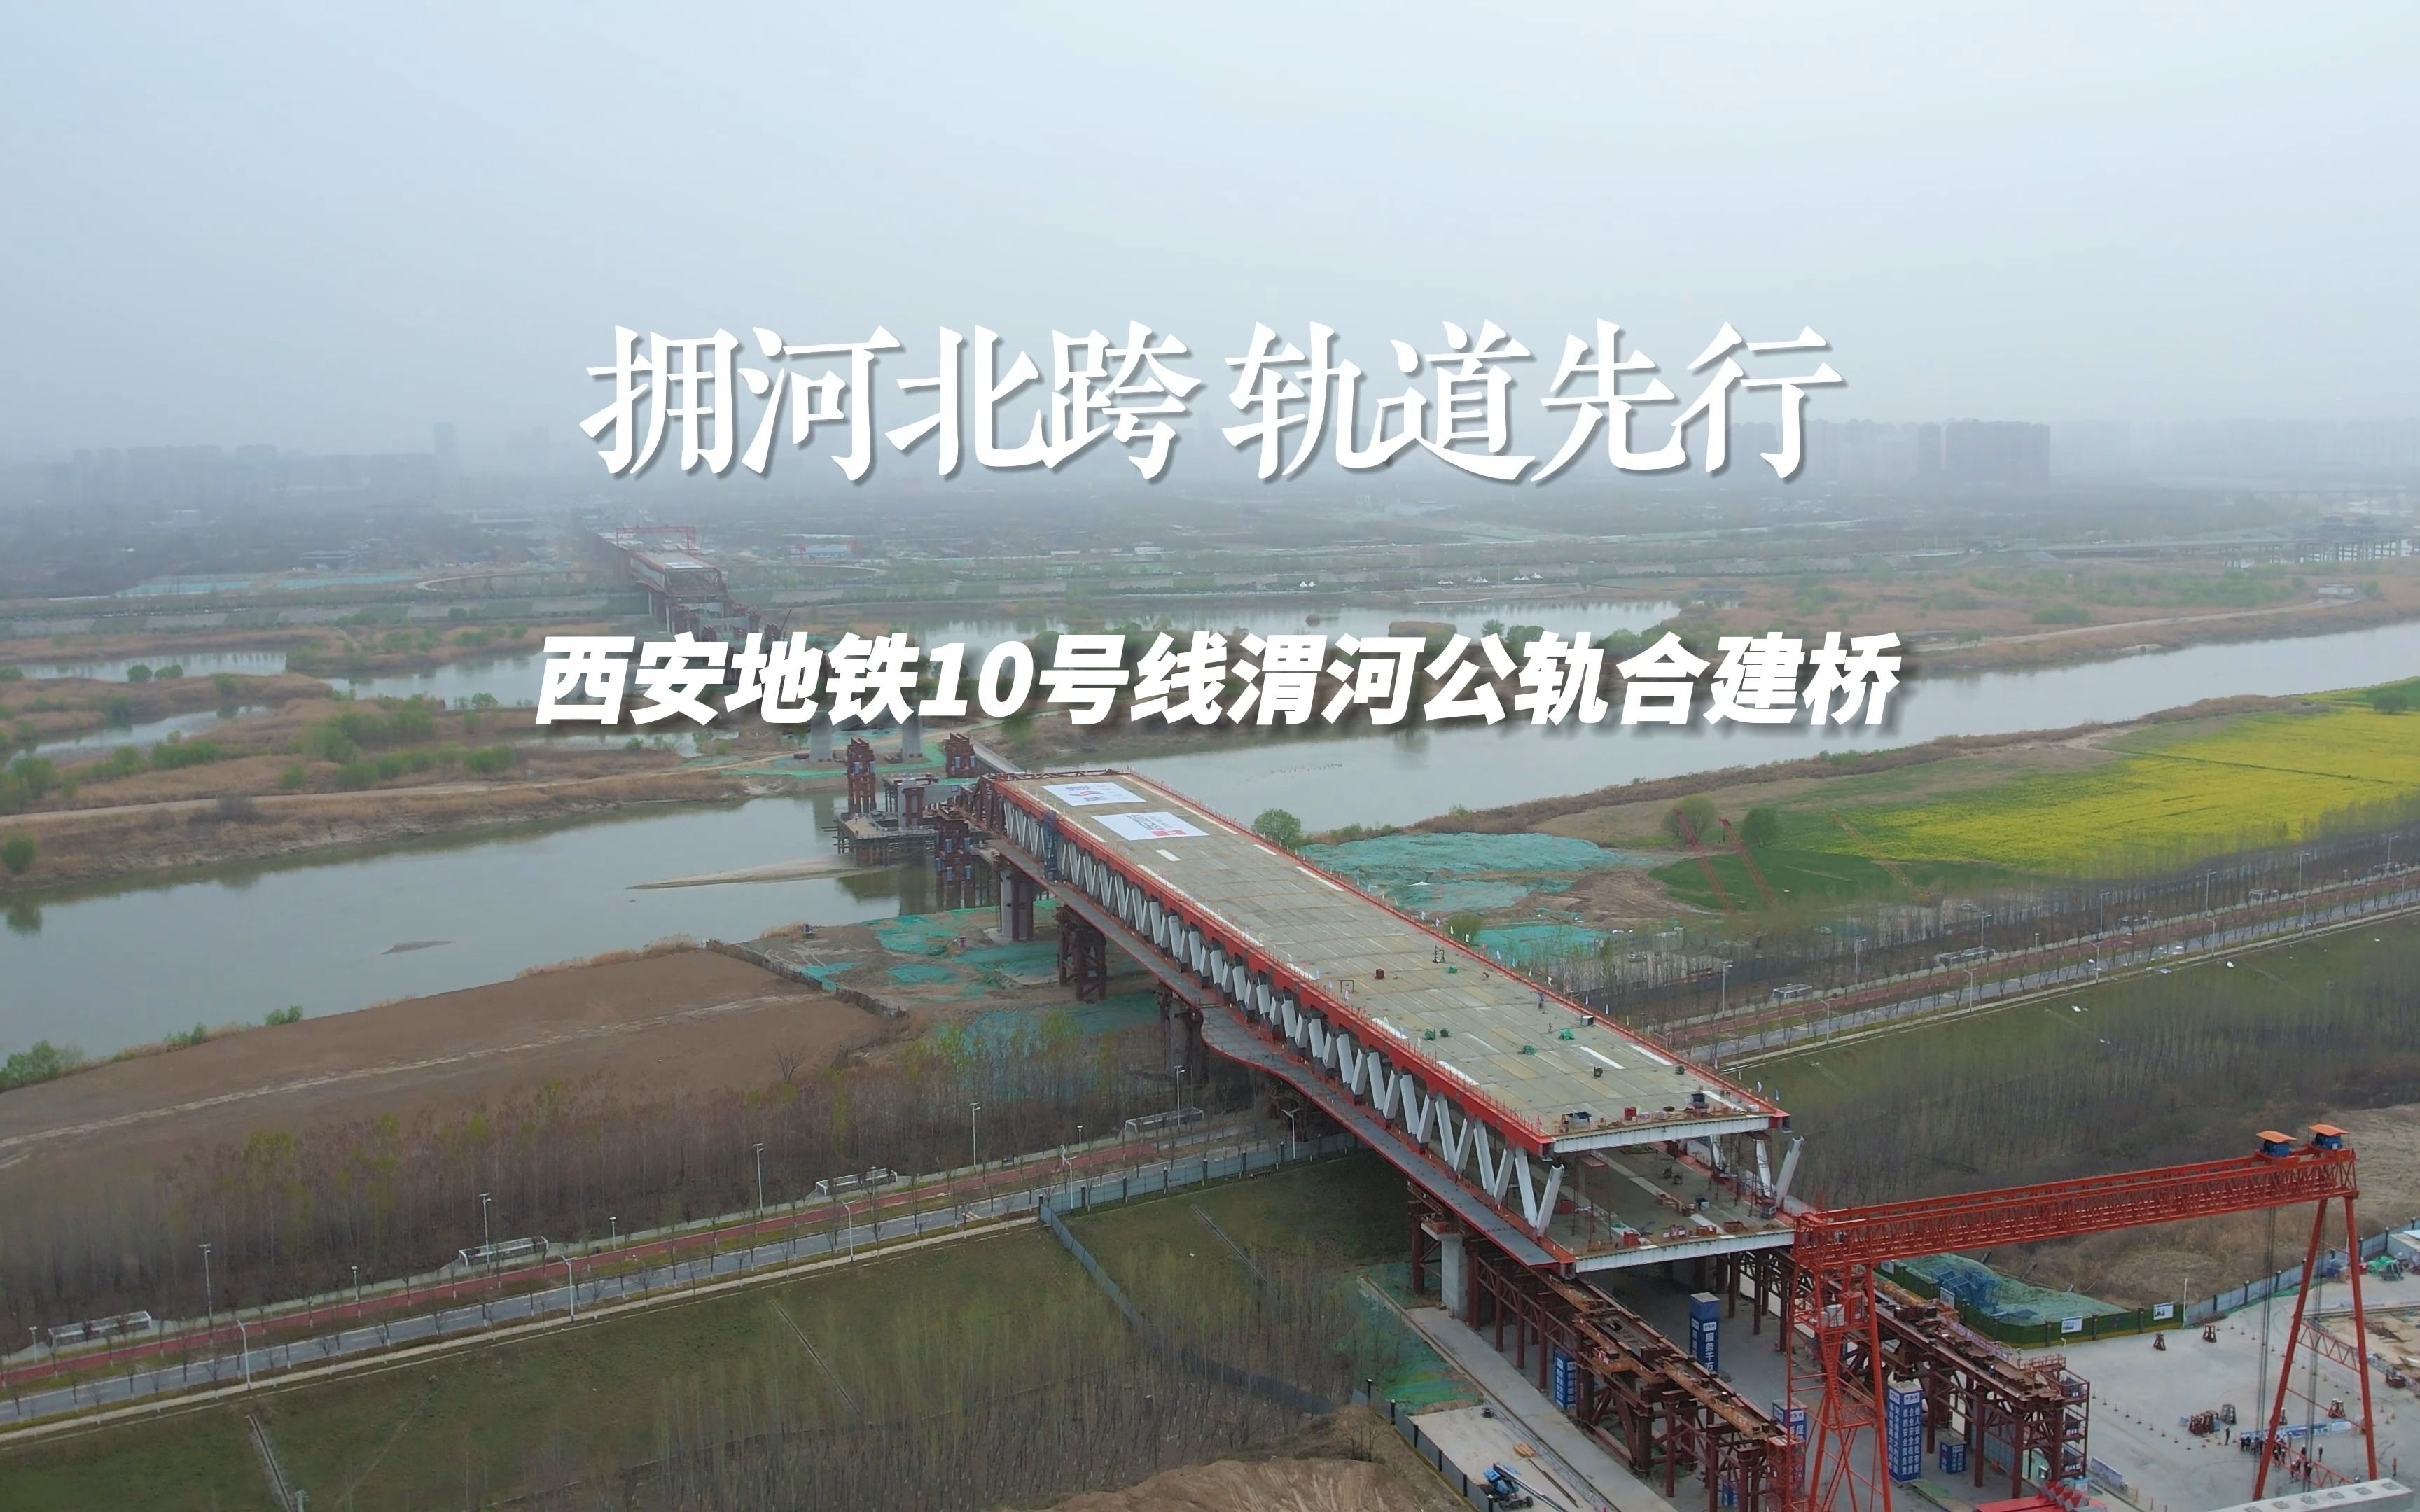 西安北跨发展集结号吹响,地铁10号线跨渭河公轨合建桥提速建设!